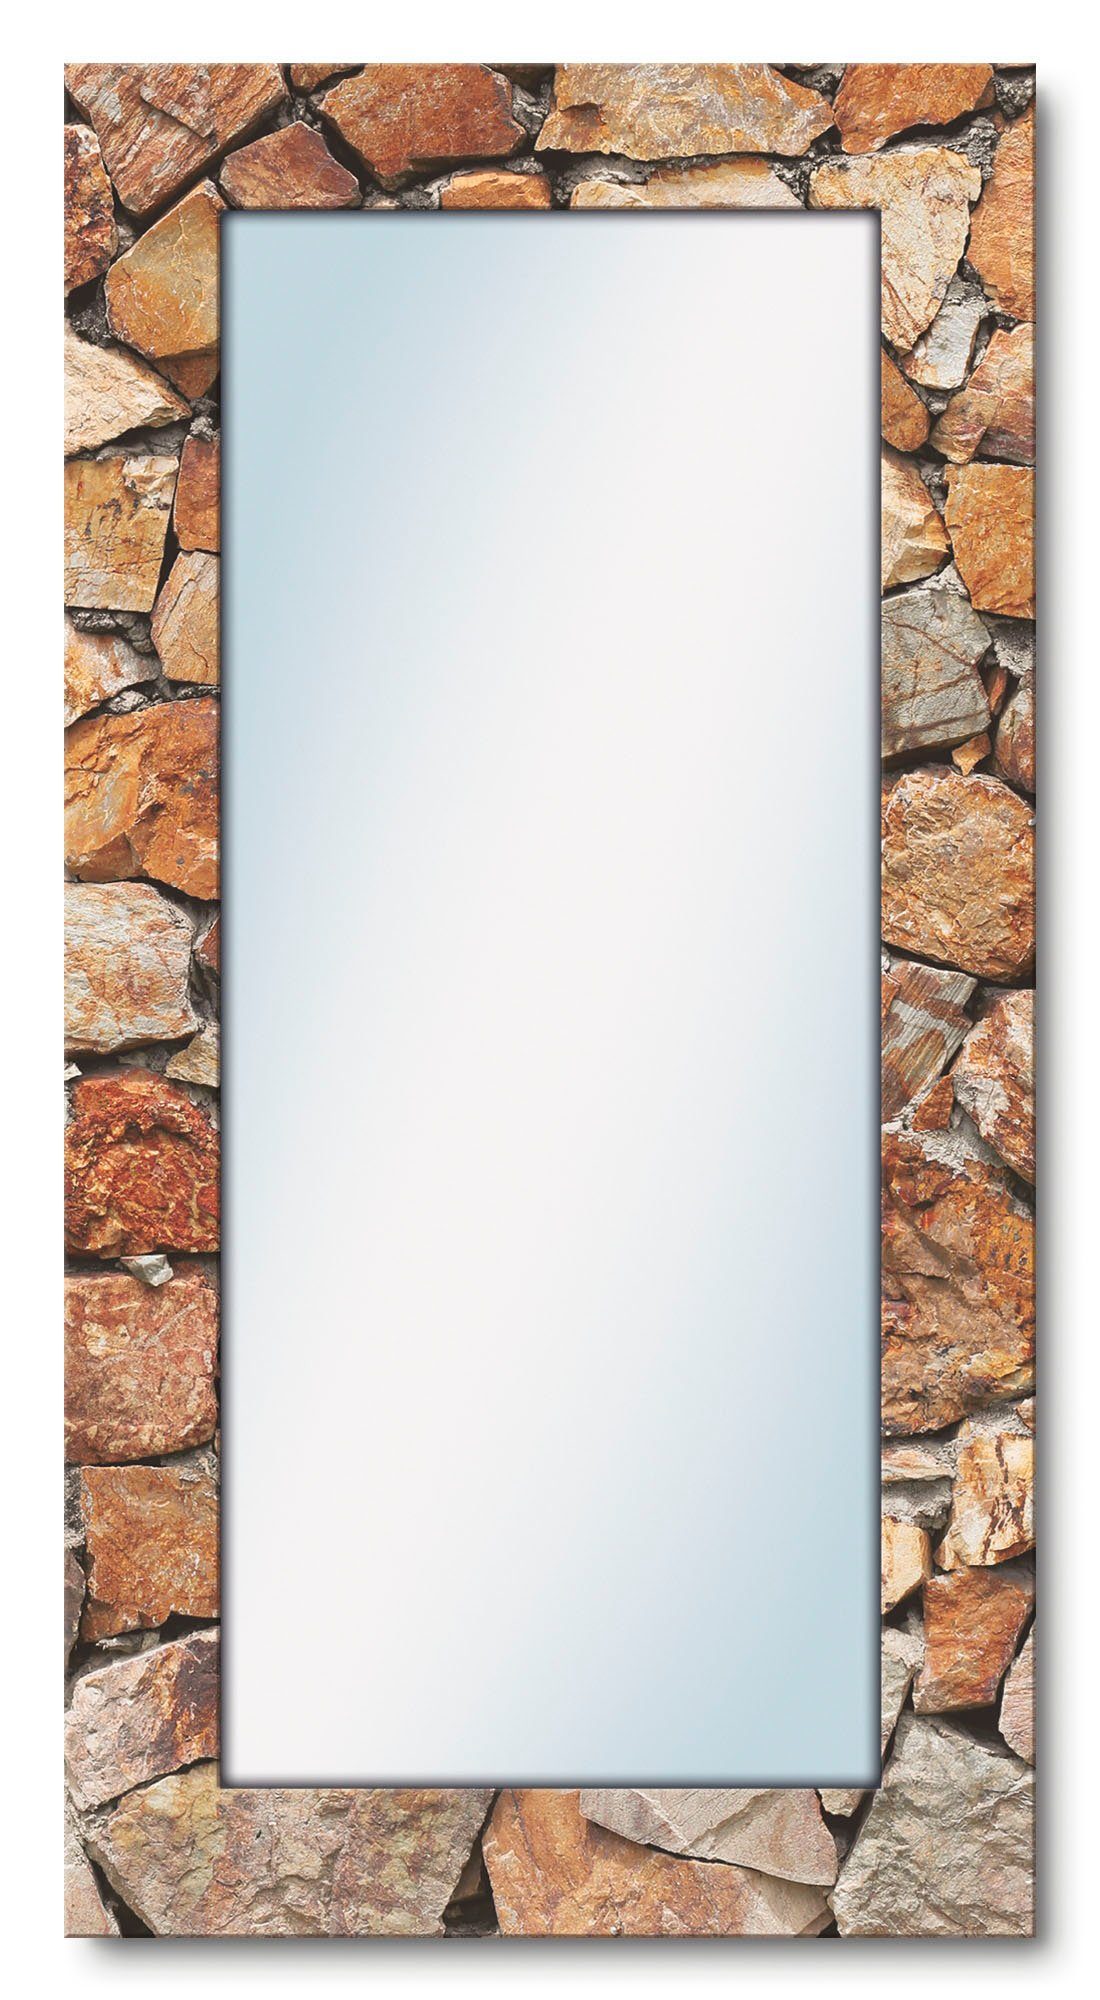 Vervelen blootstelling kroeg Artland Wandspiegel Bruine stenen muur ingelijste spiegel voor het hele  lichaam met motiefrand, geschikt voor kleine, smalle hal, halspiegel,  mirror spiegel omrand om op te hangen snel online gekocht | OTTO